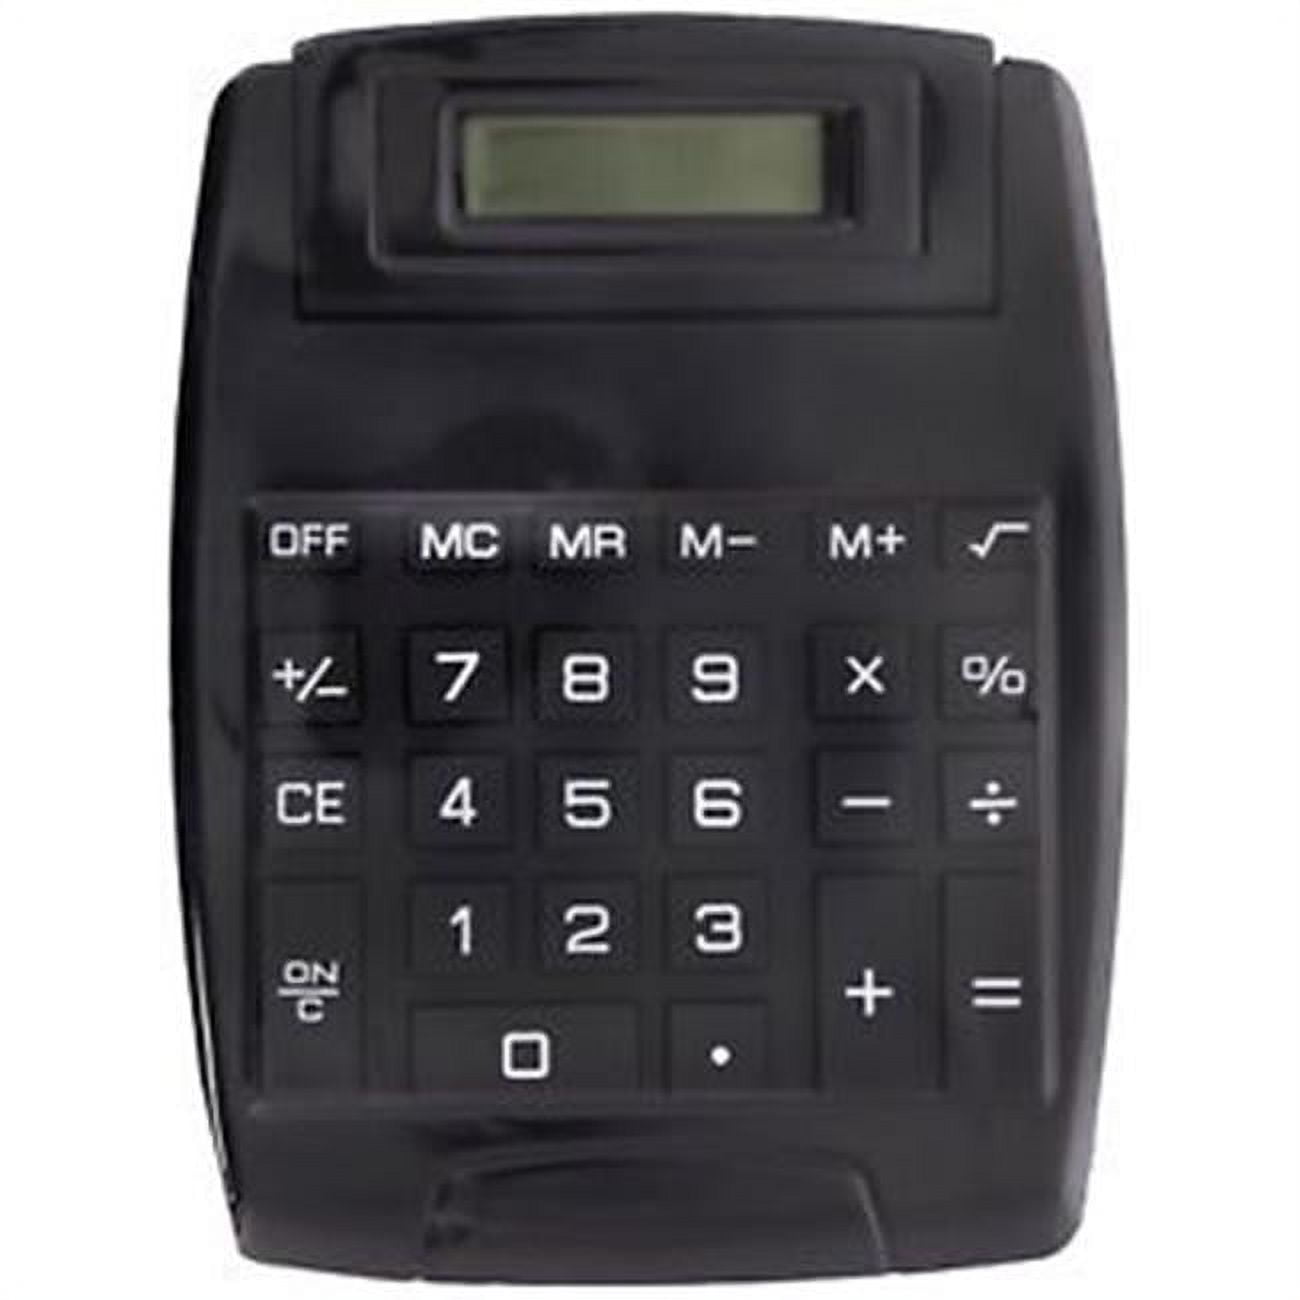 Cal3803b Big Display Calculator, Large Buttons & Tilt Screen